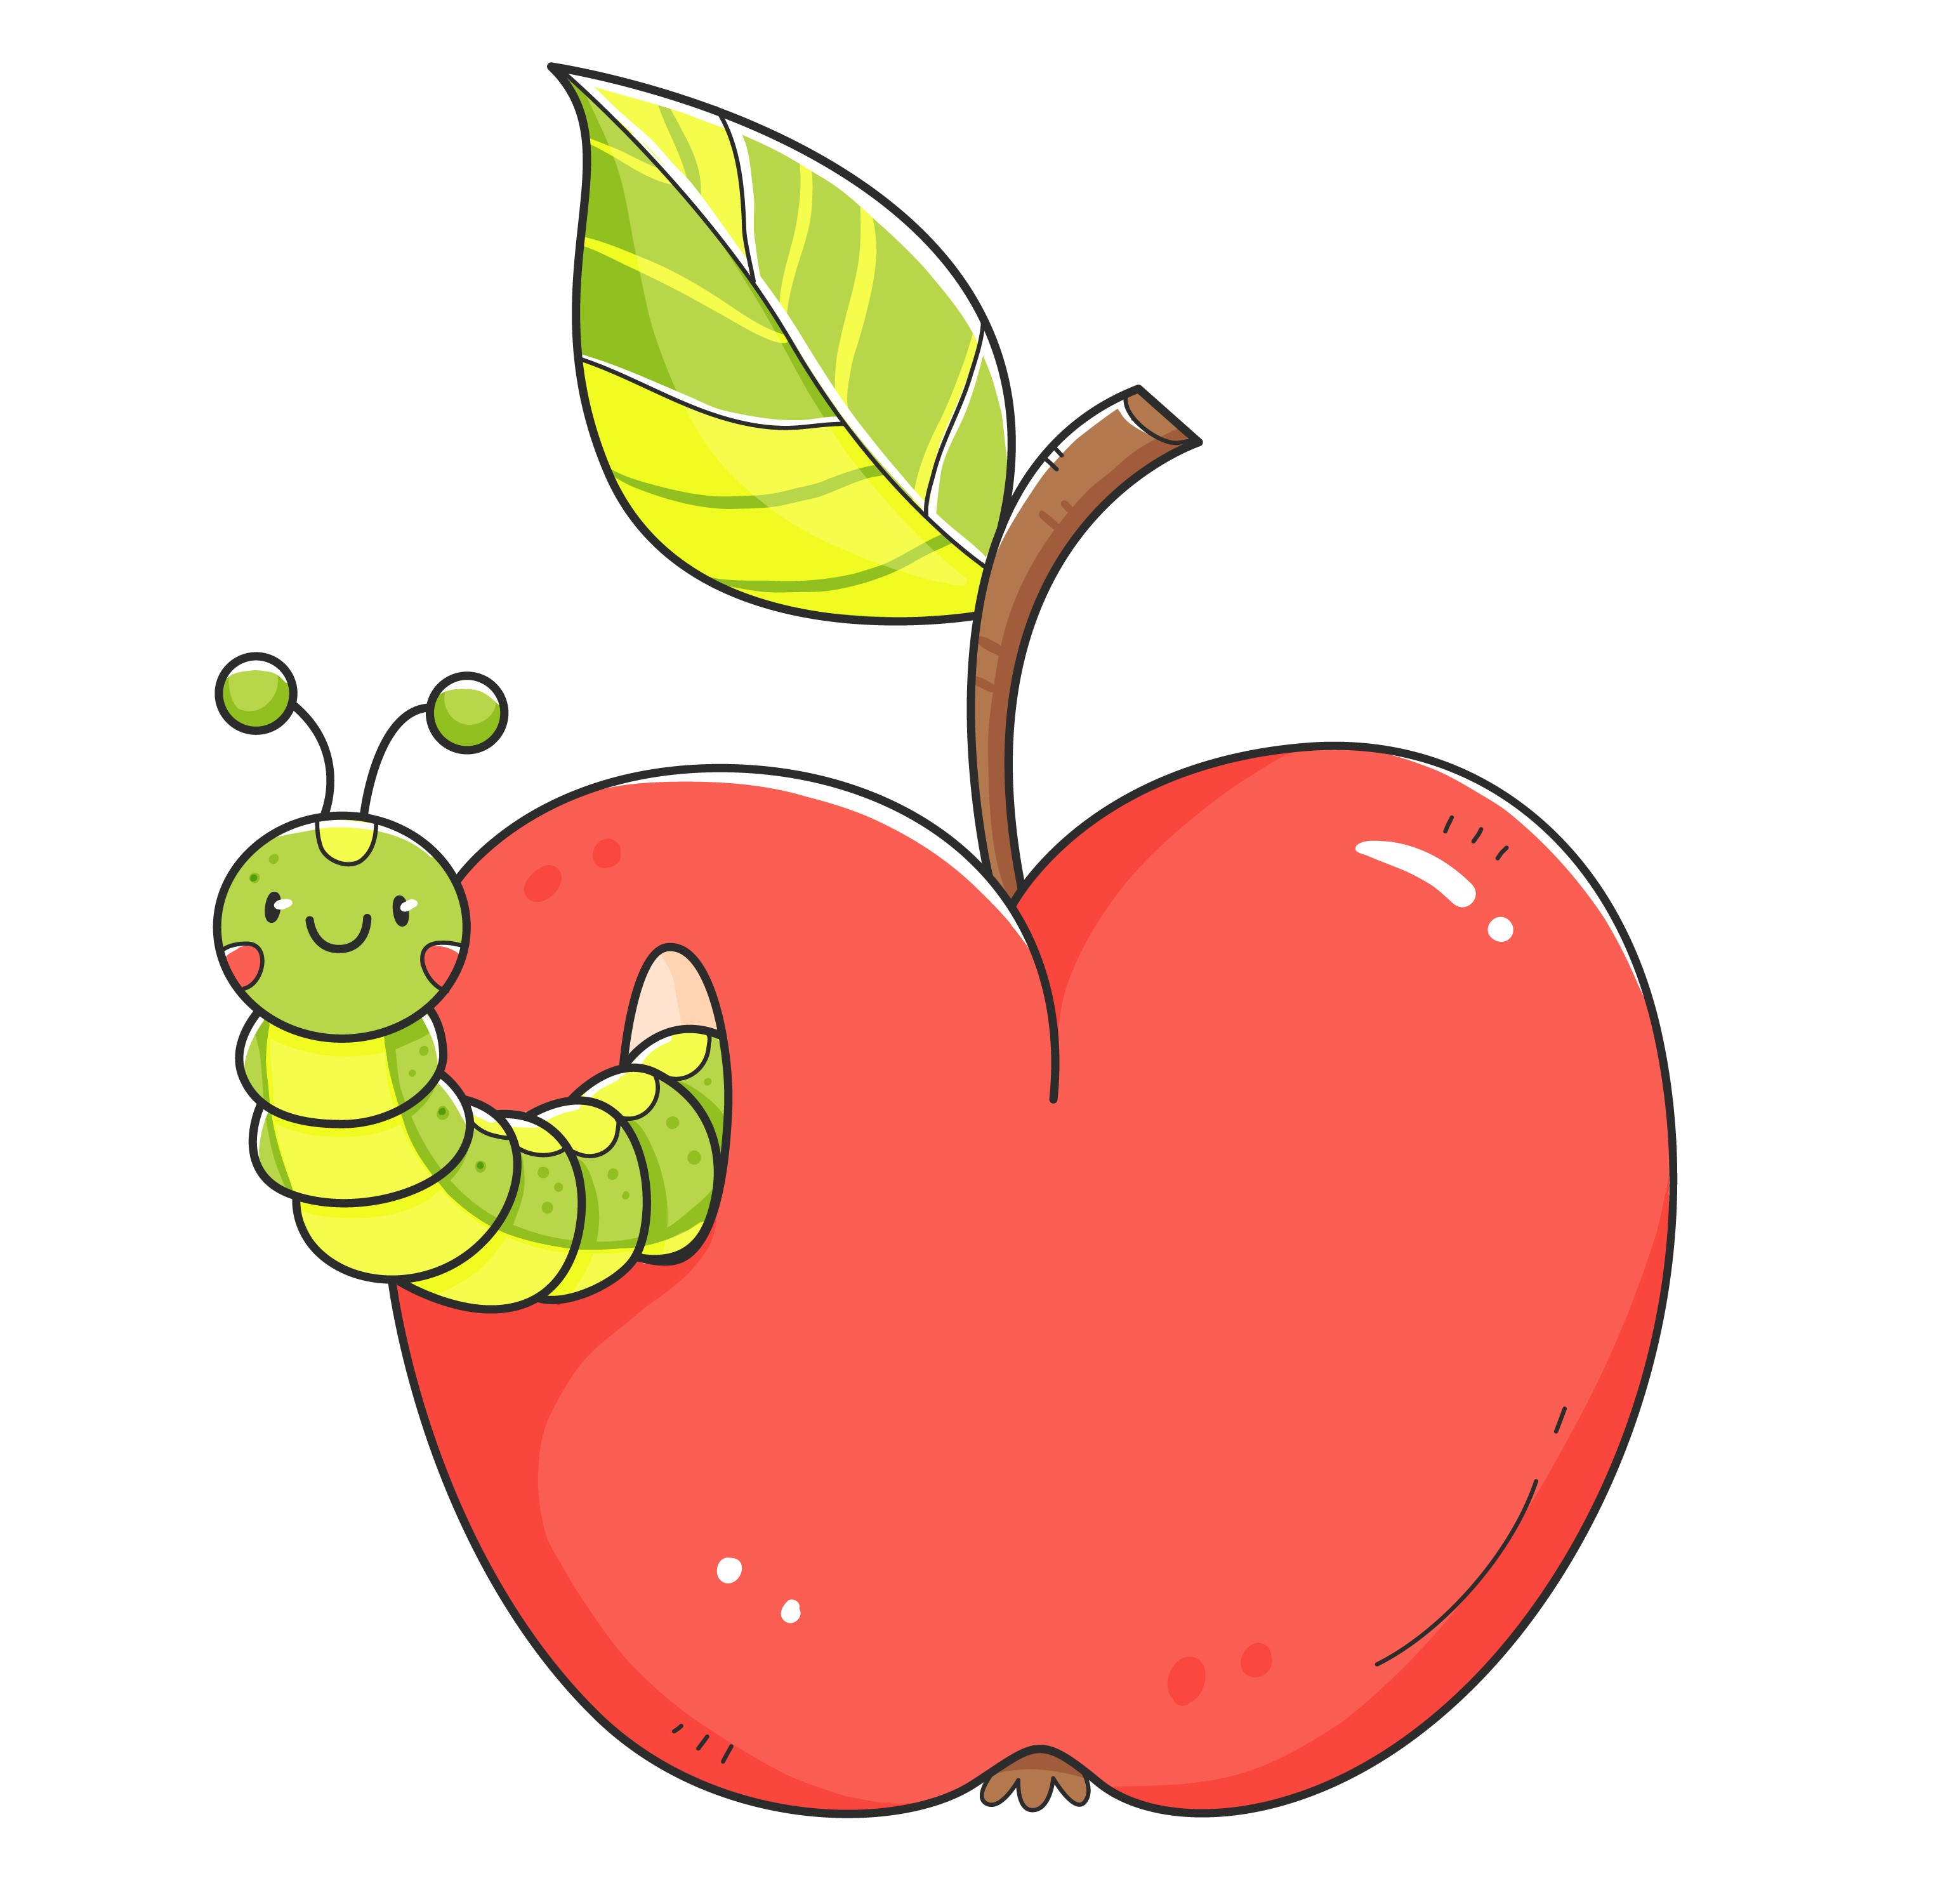 Образец раскрашенной картинки красное яблоко с гусеницей